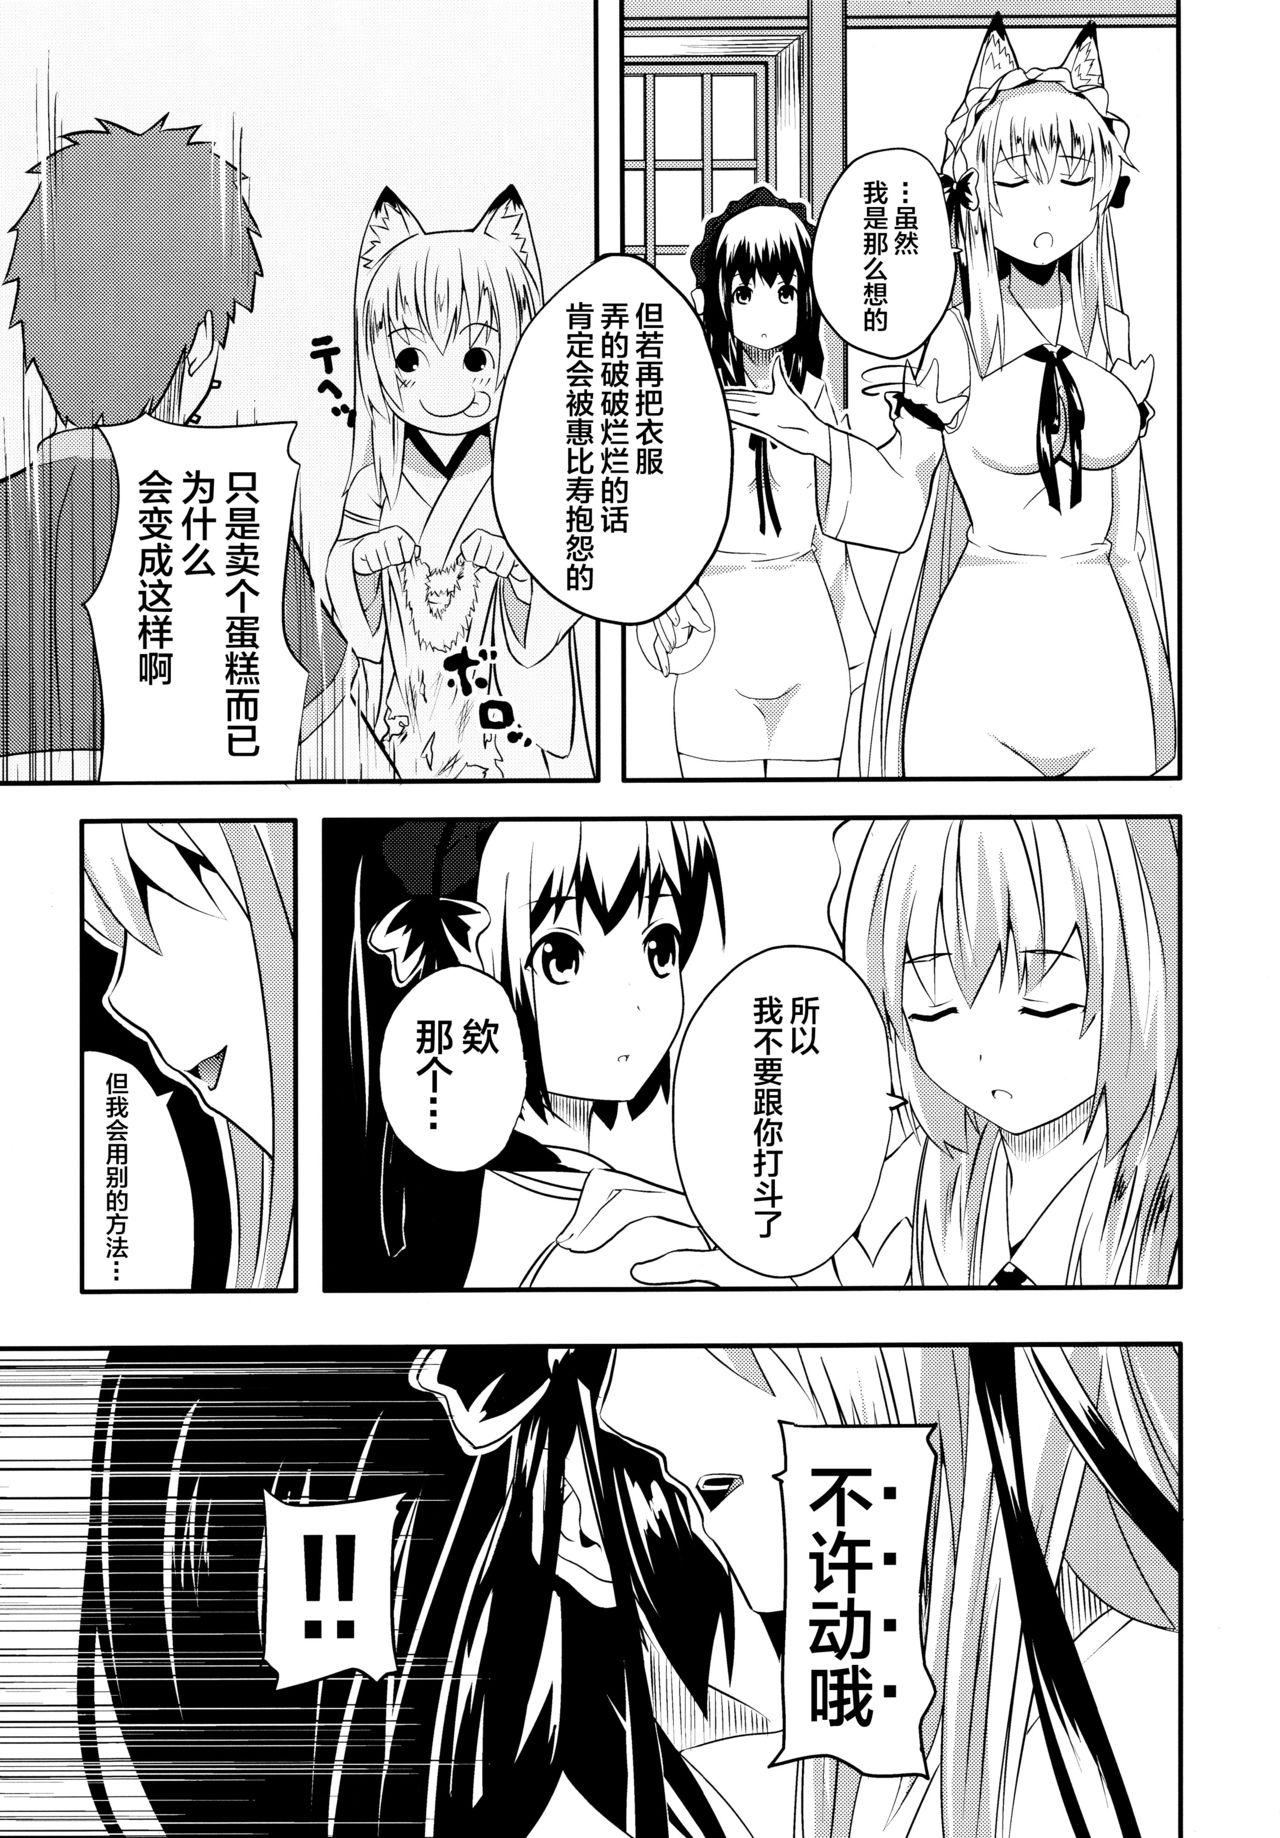 Women Sucking Dicks Hare, Tokidoki Oinari-sama 4 - Wagaya no oinari-sama Onlyfans - Page 9